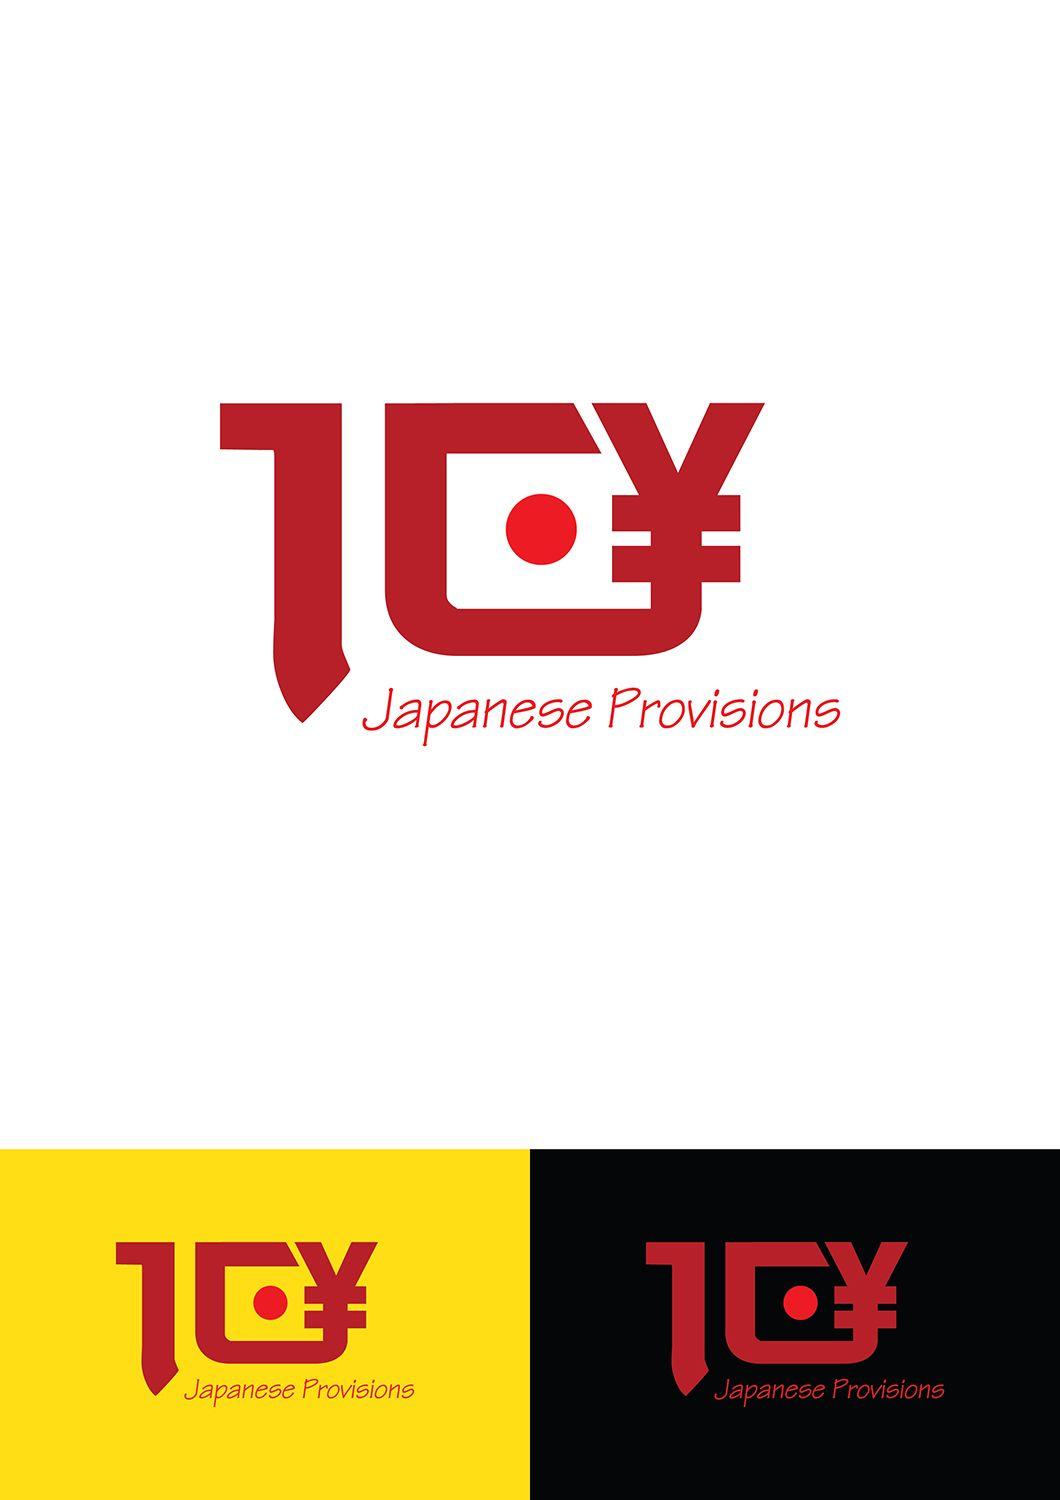 Japanese MP Logo - Upmarket, Elegant, Restaurant Logo Design for 10 Yen in smaller